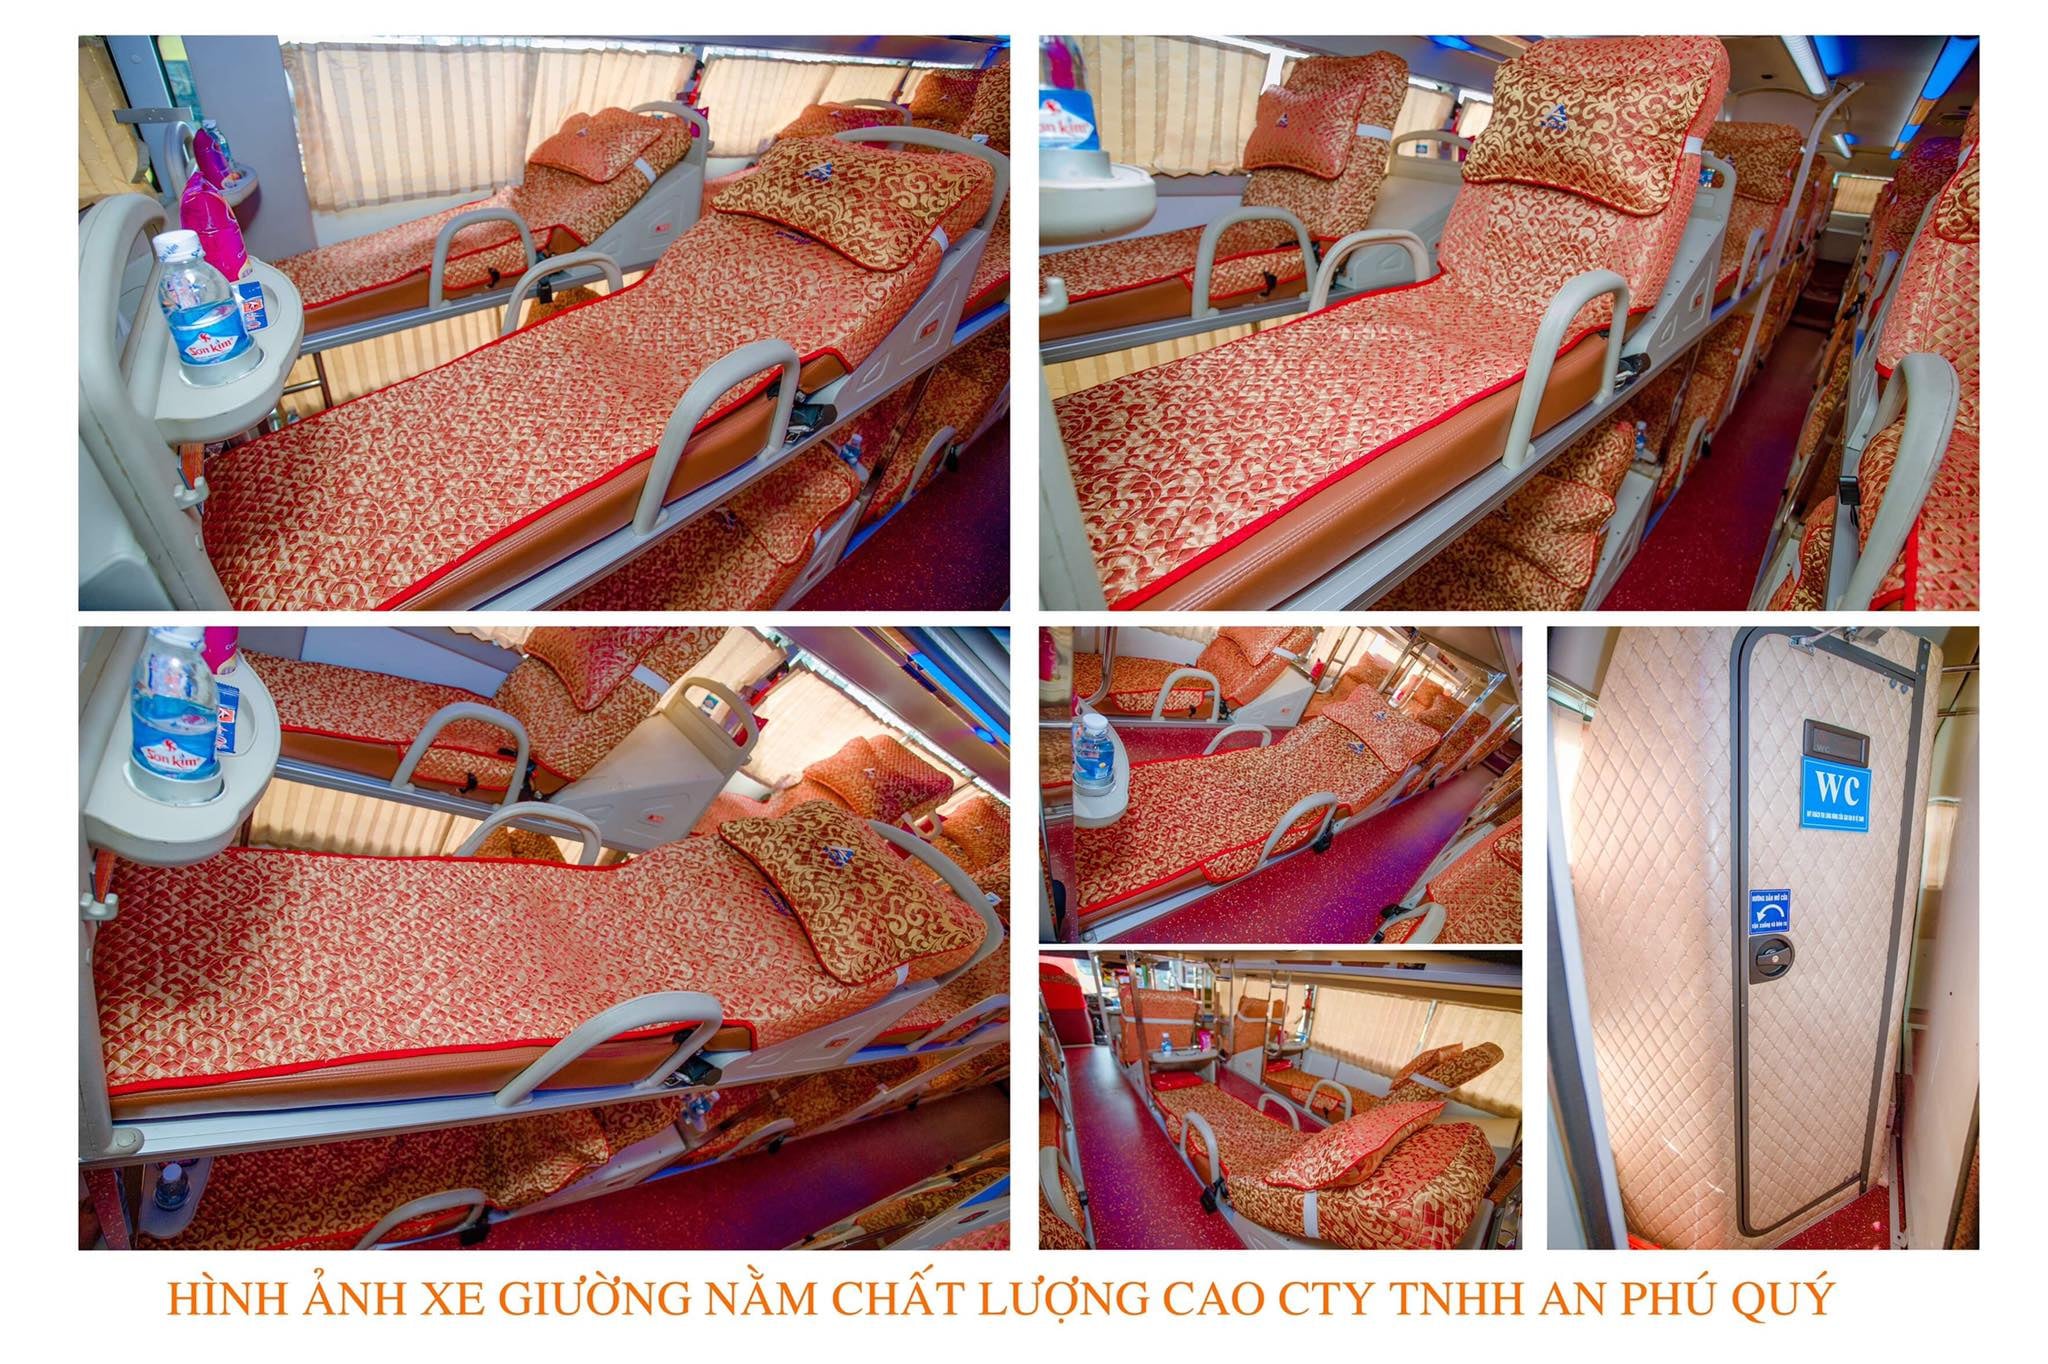 Nội thất giường nằm bên trong xe An Phú Quý